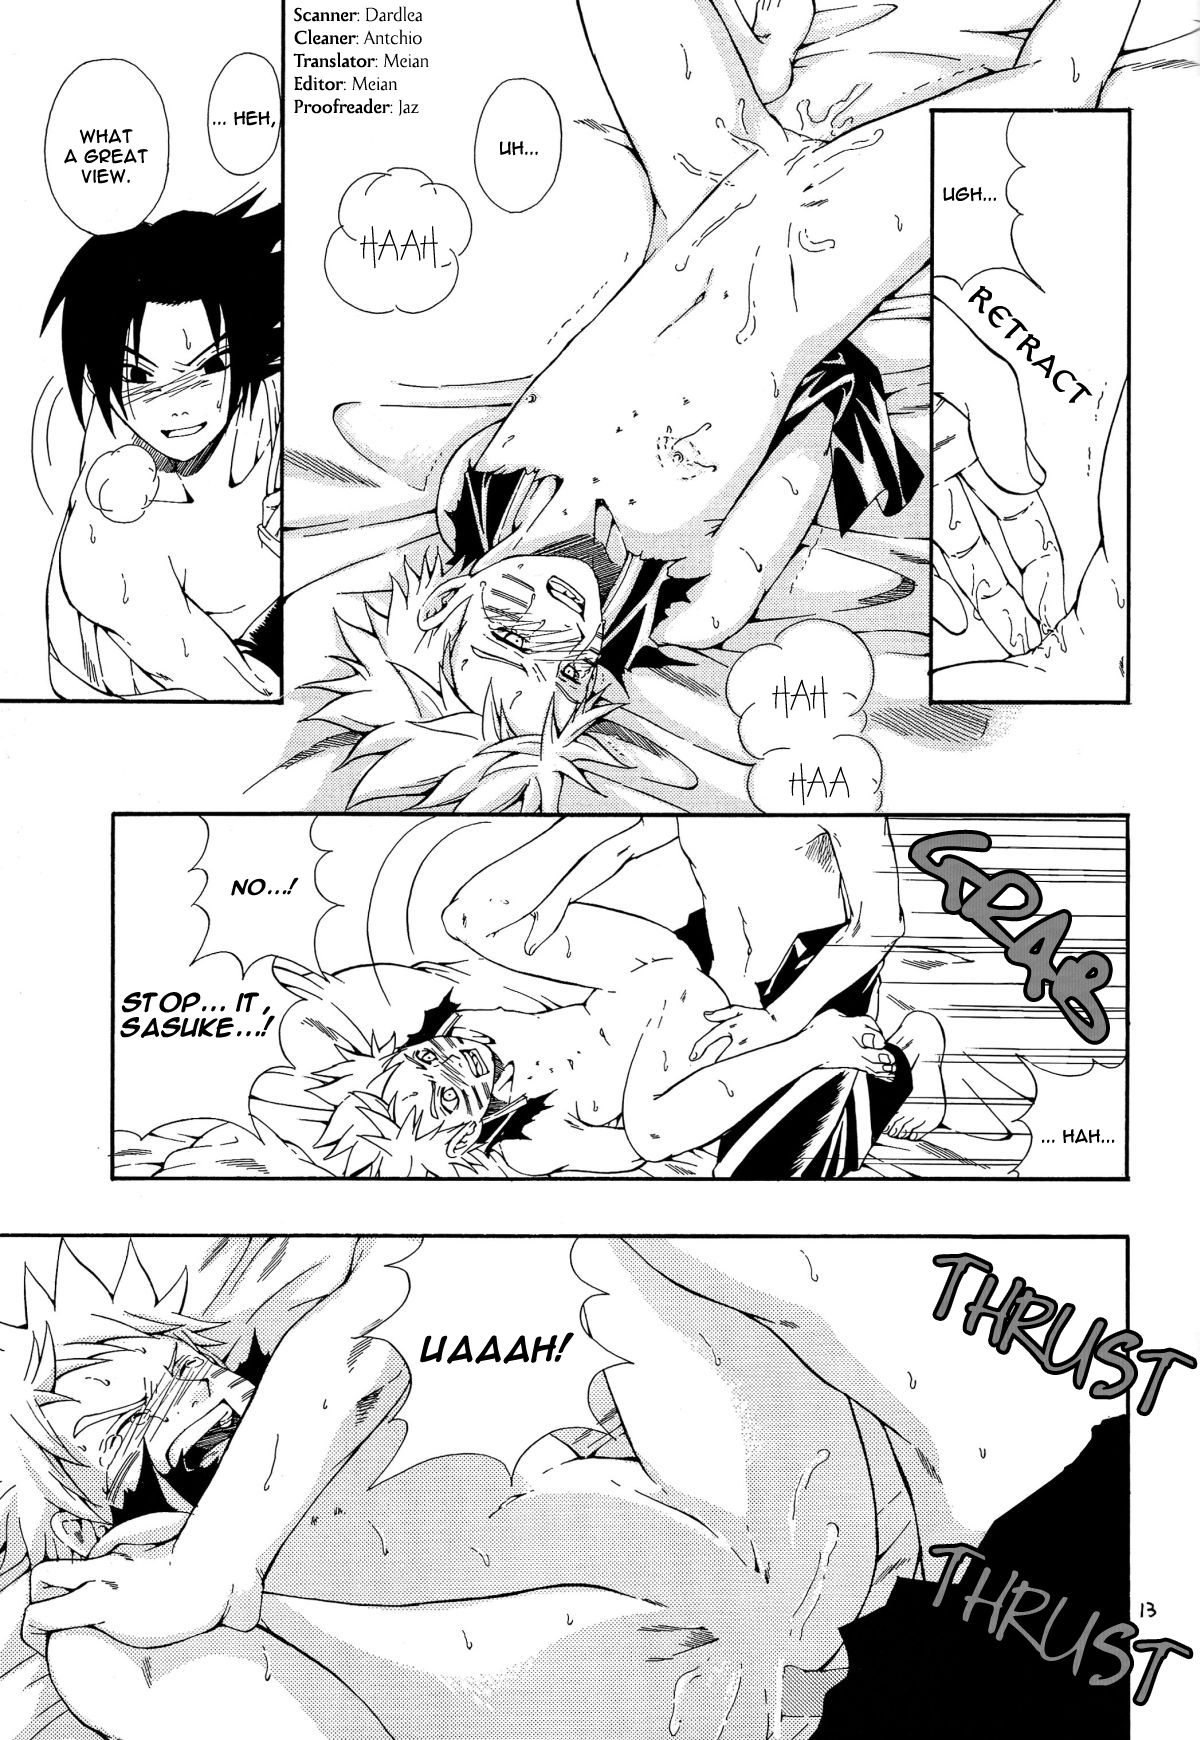 Naruto x sasuke porn comic